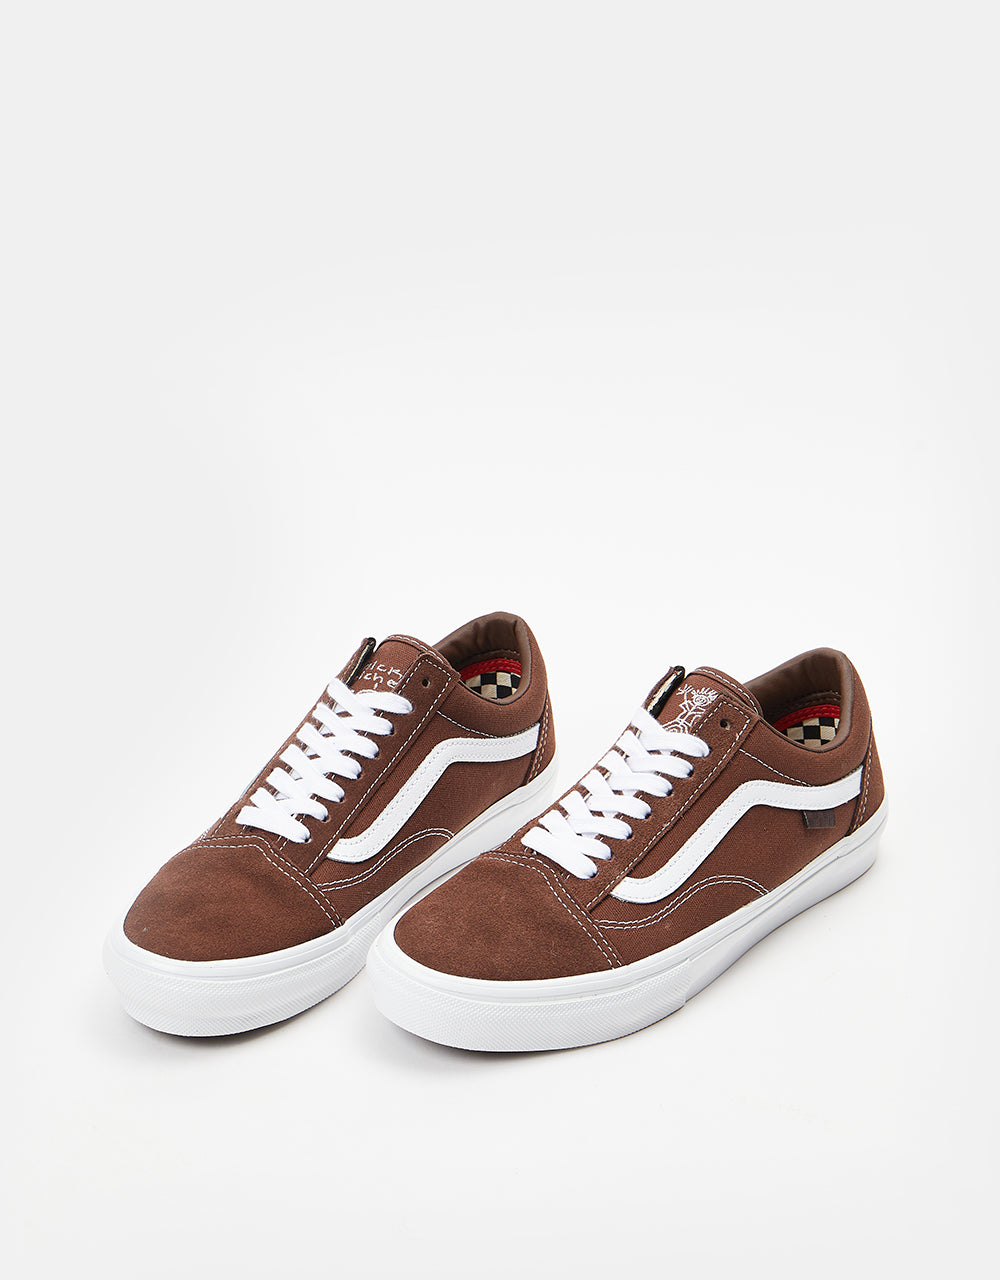 Vans Skate Old Skool Shoes - (Nick Michel) Brown/White